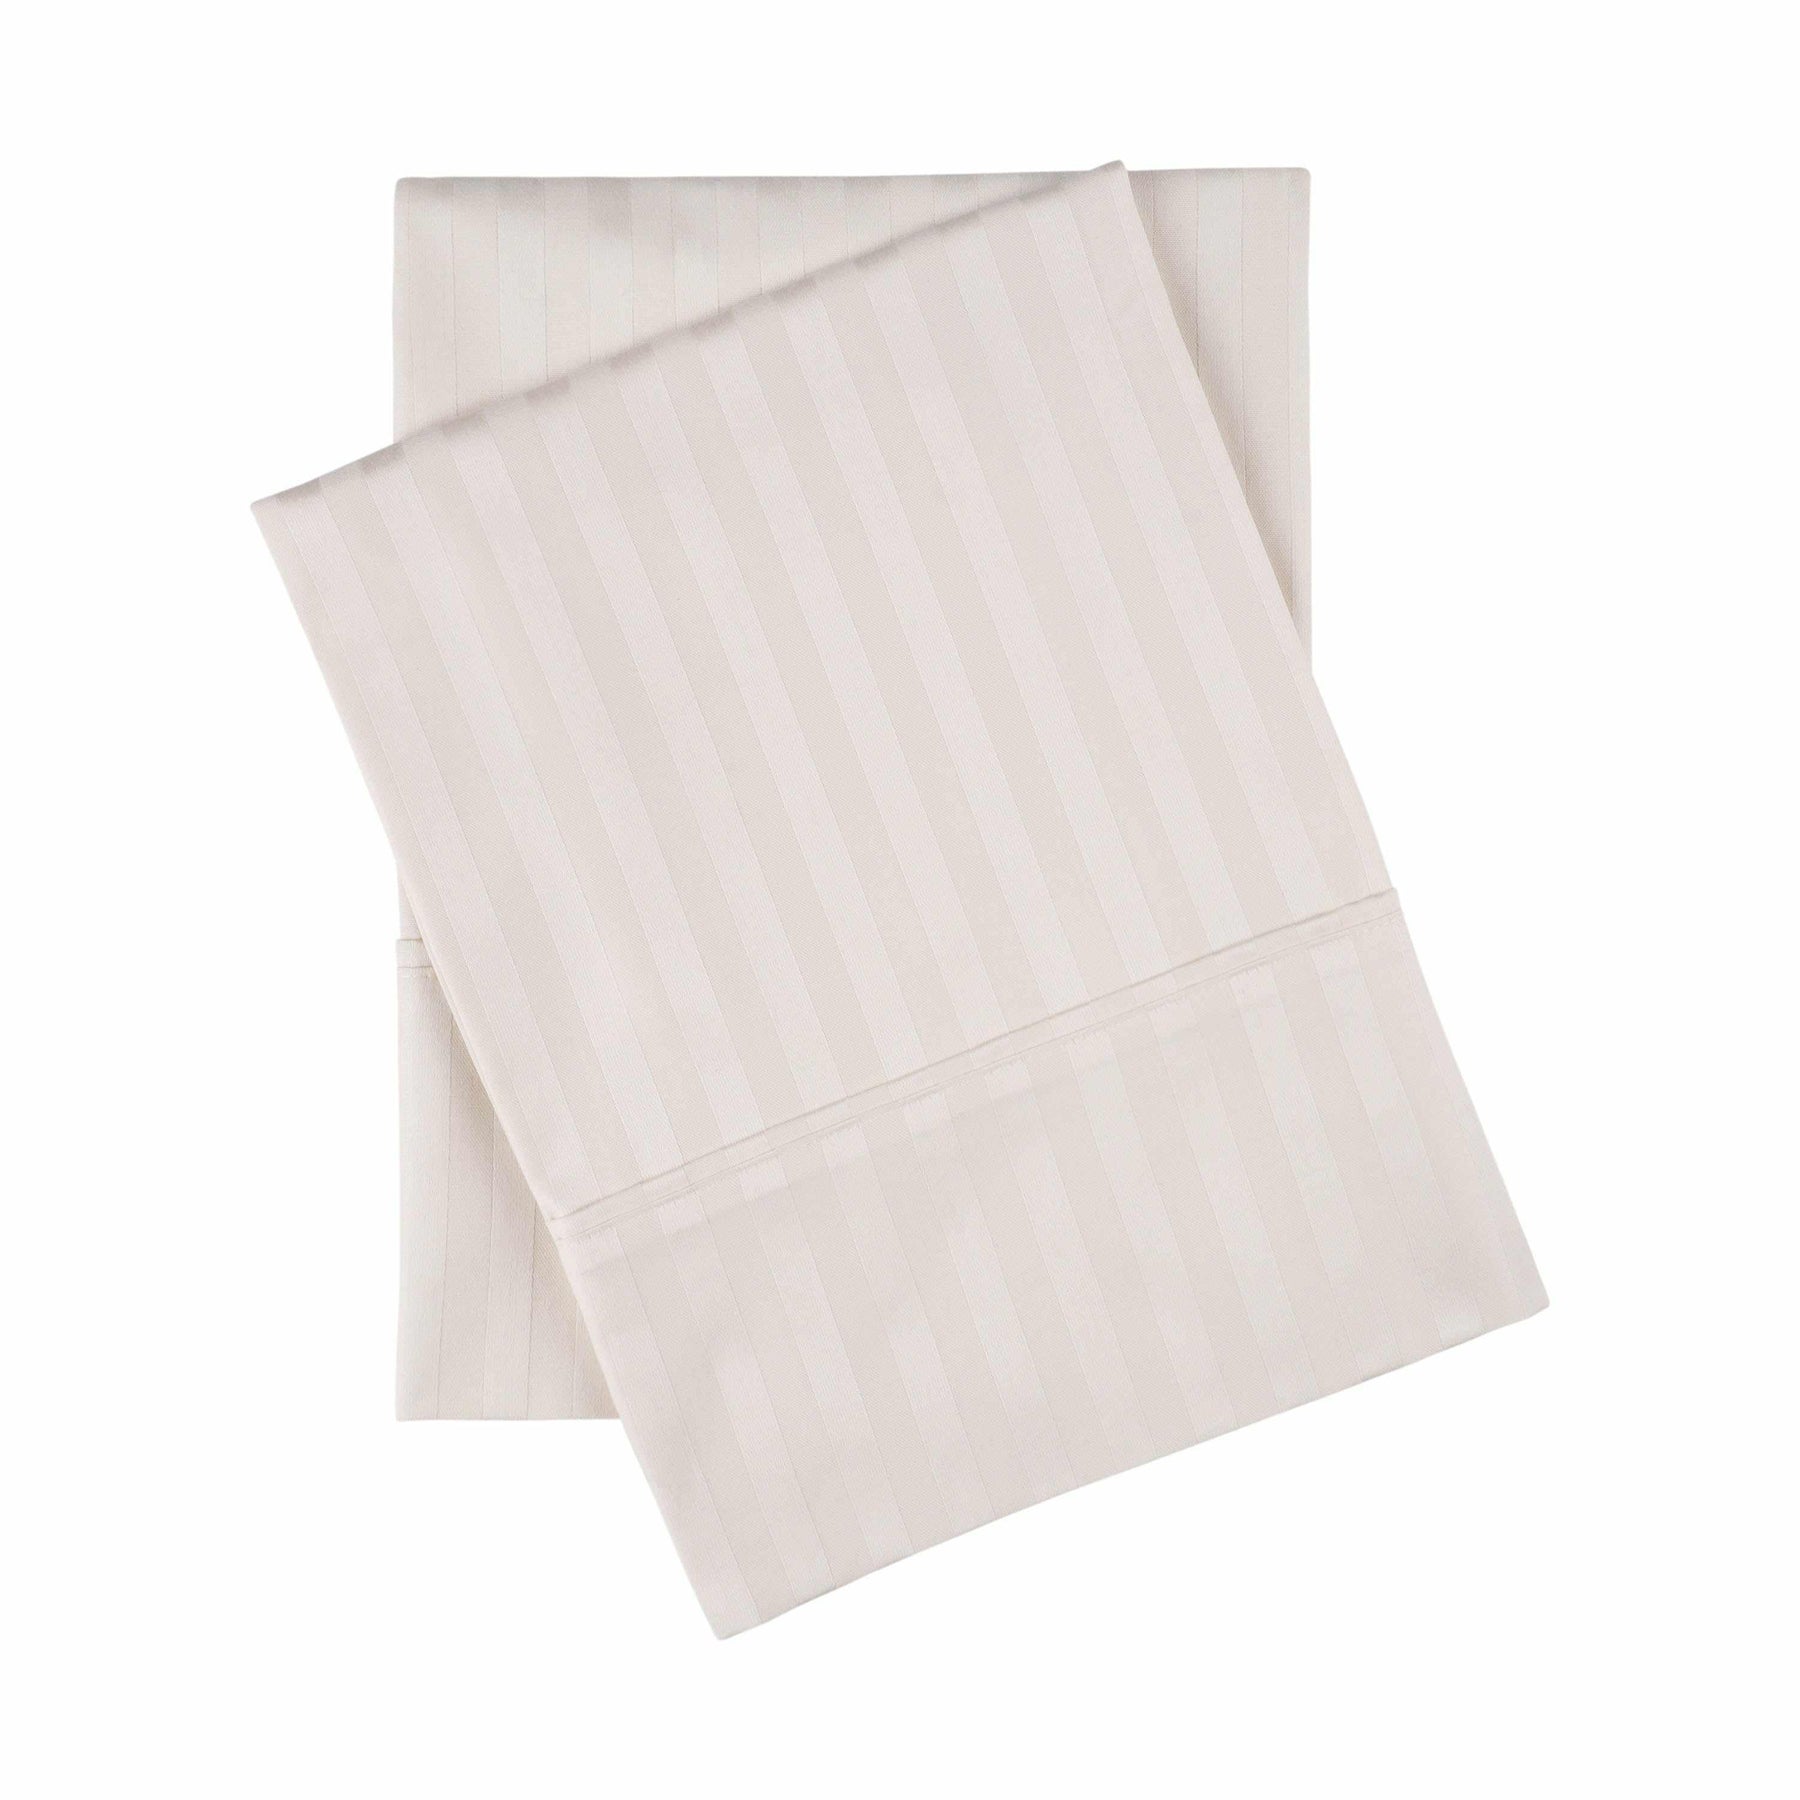 400 Thread Count Soft Stripe Egyptian Cotton Pillowcase Set - Ivory